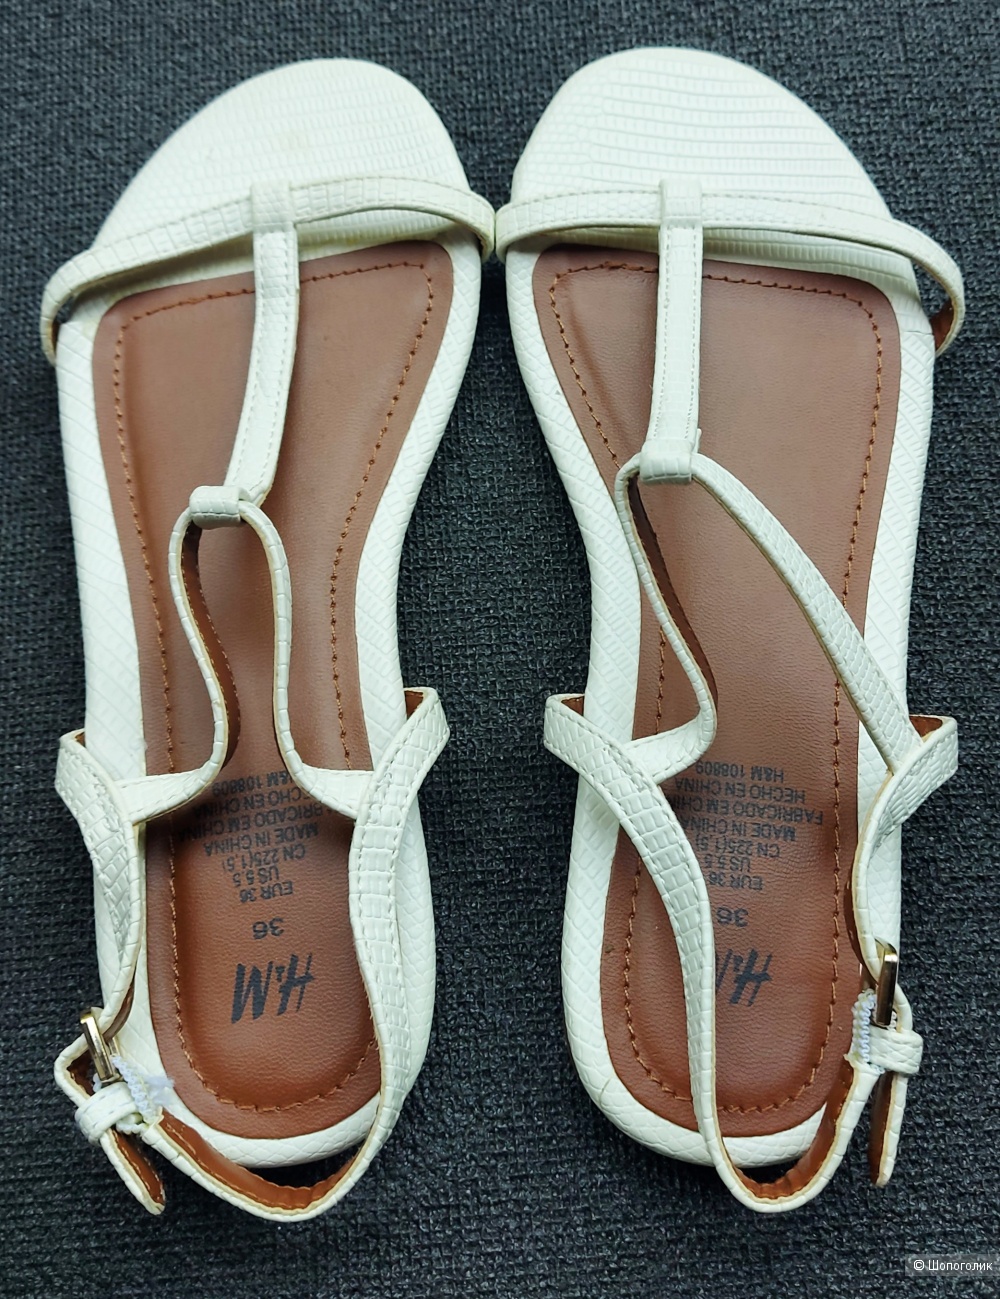 Босоножки/сандалии H&M, 36 р-р